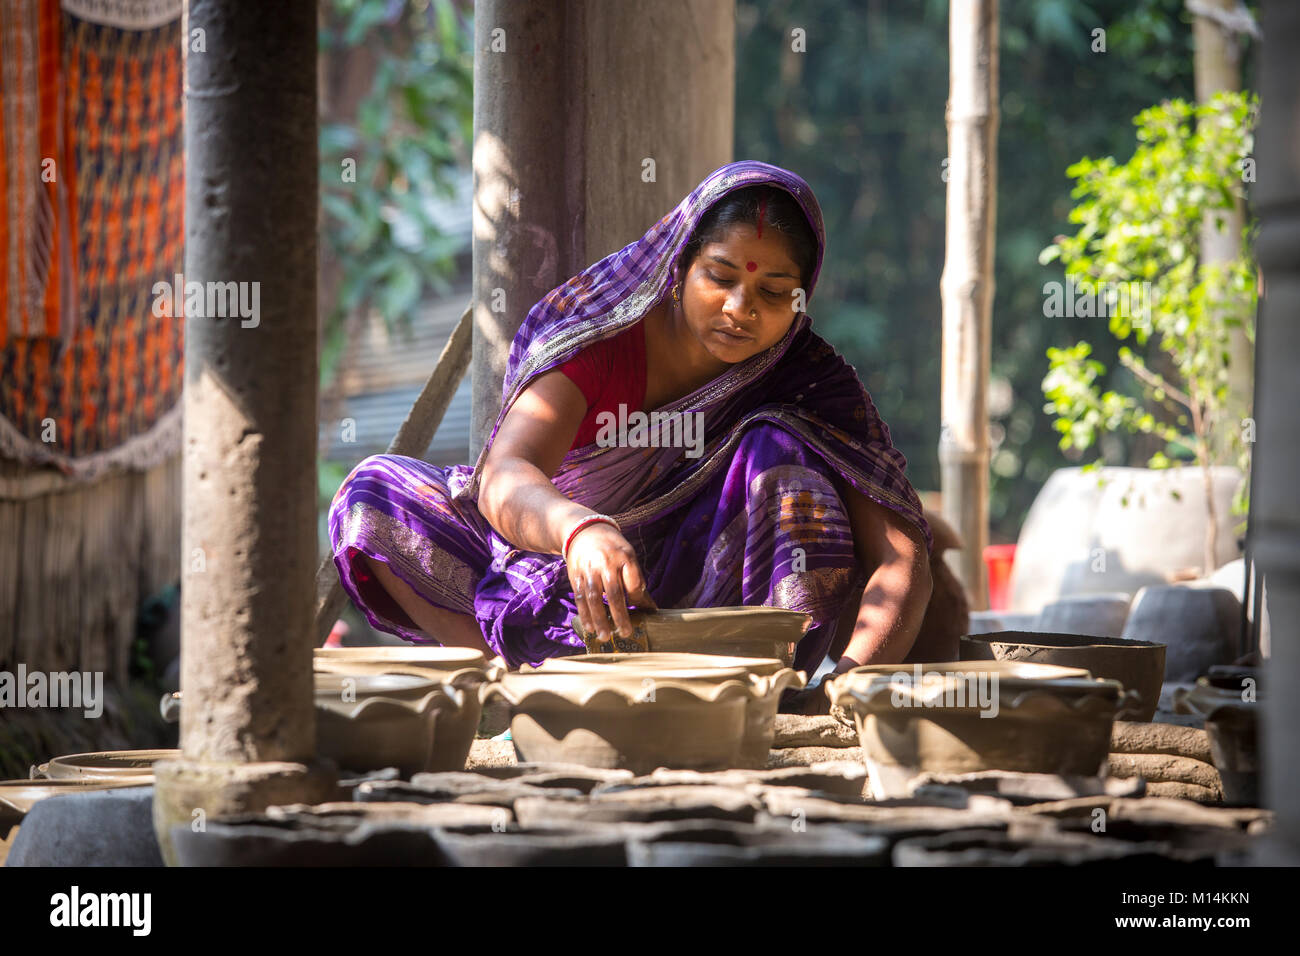 Kobita Rani Pal shapes a pottery at Iswardi, Bangladesh. Stock Photo